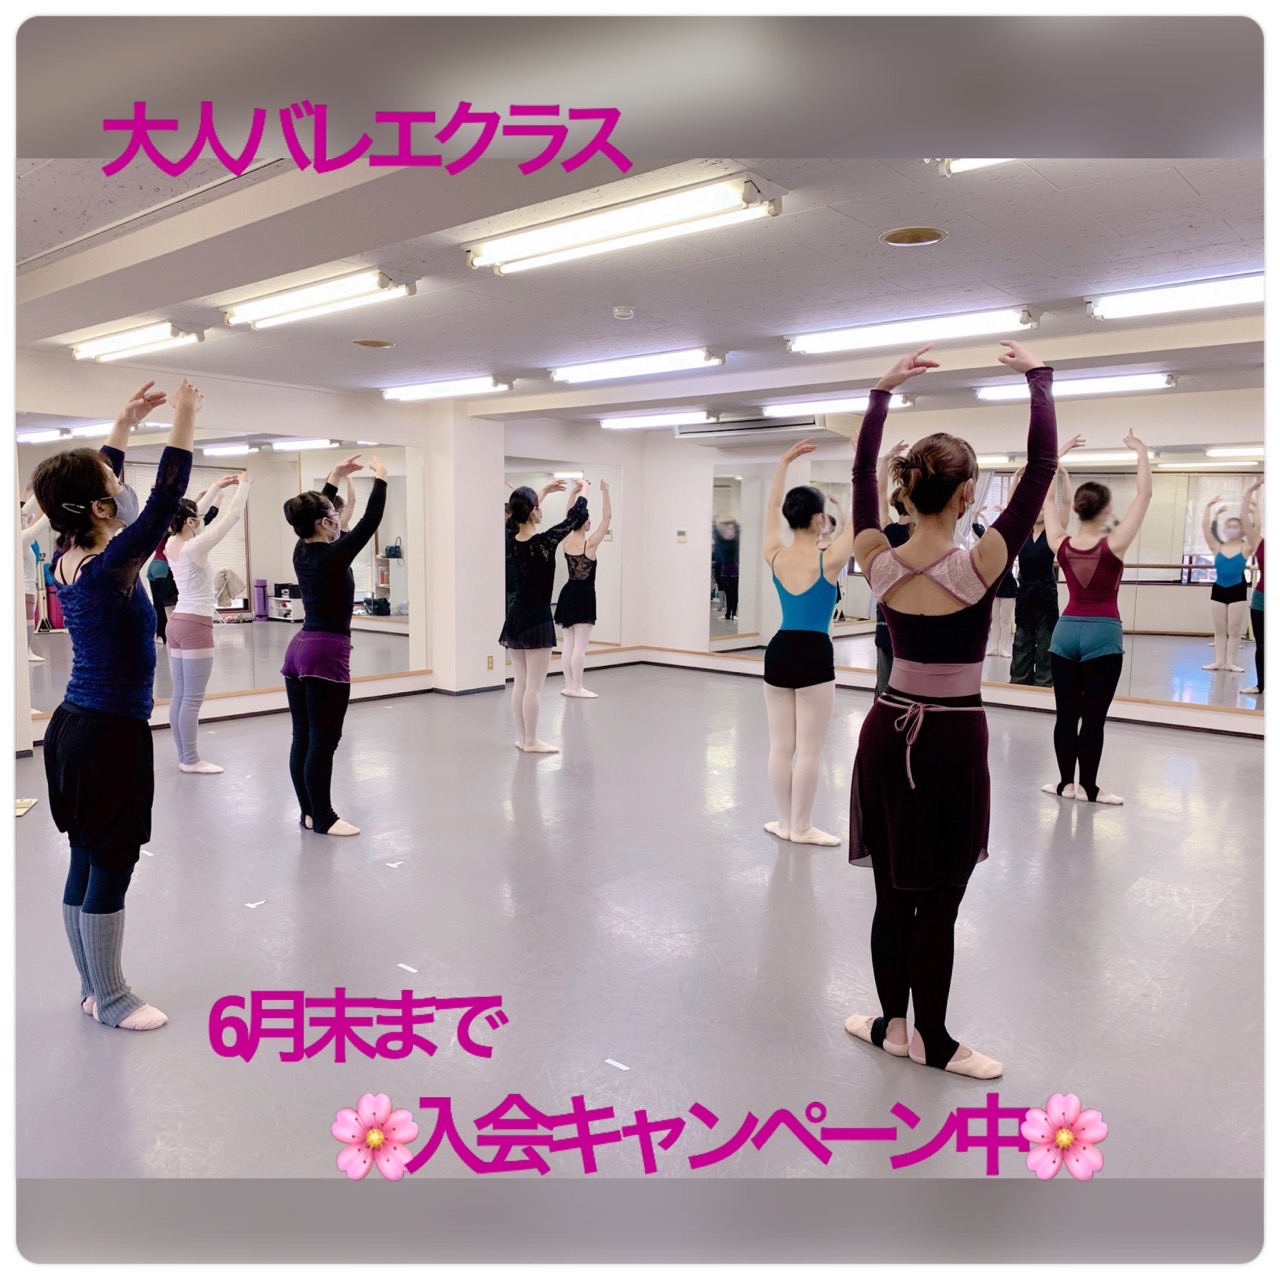 Ballet Studio Joie（バレエスタジオ ジョワ）